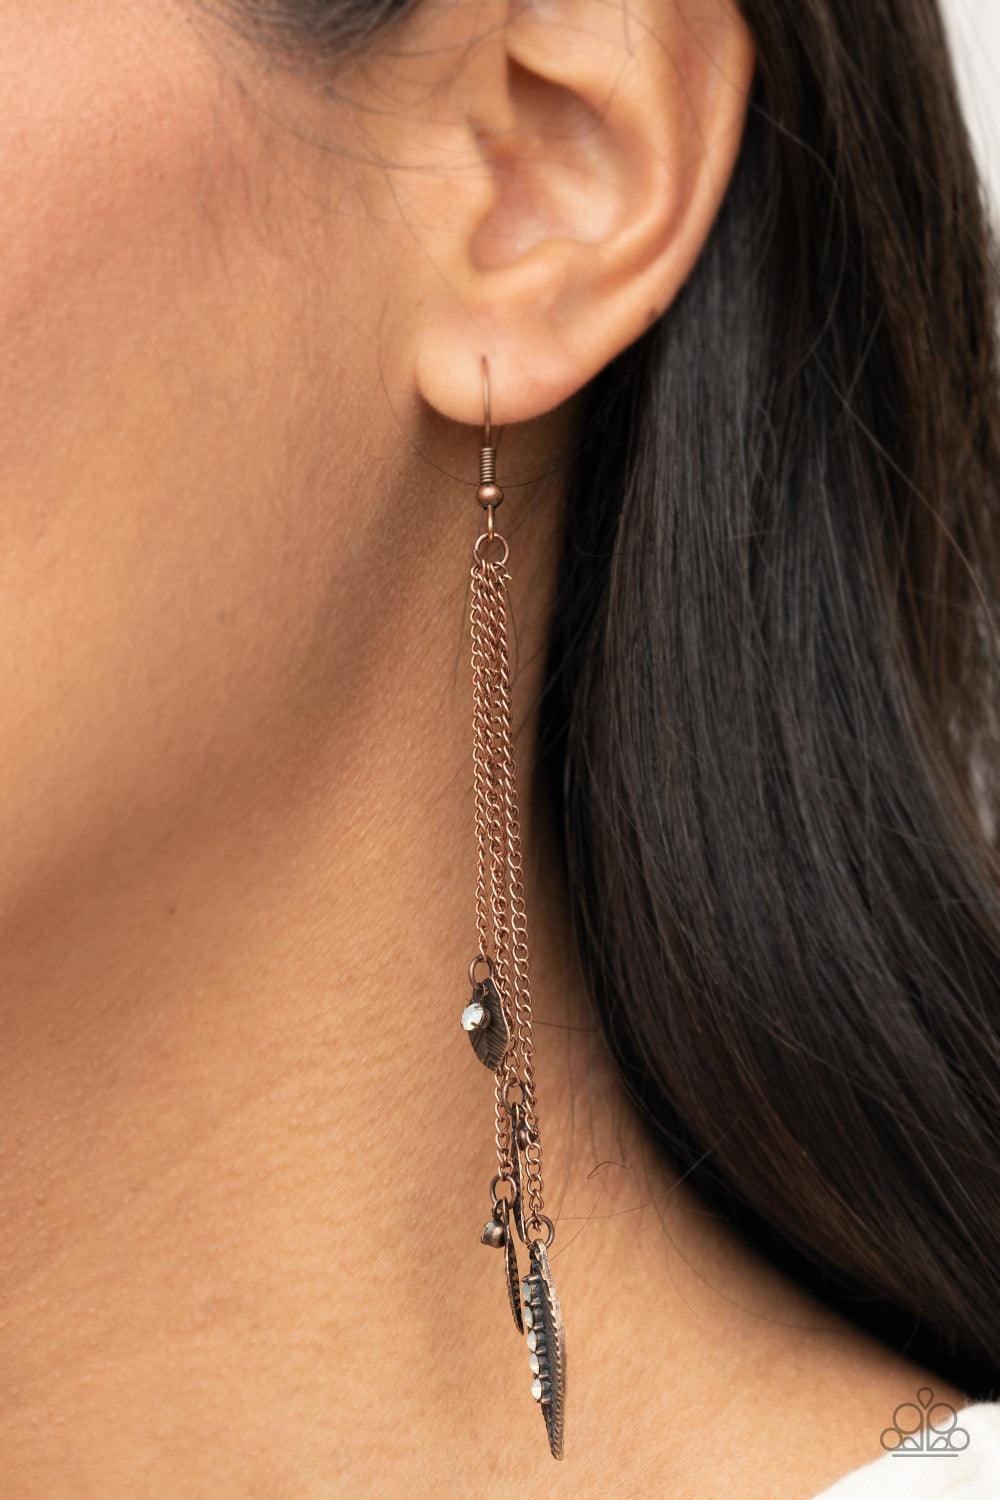 Chiming Leaflets Copper Earrings - Jewelry by Bretta